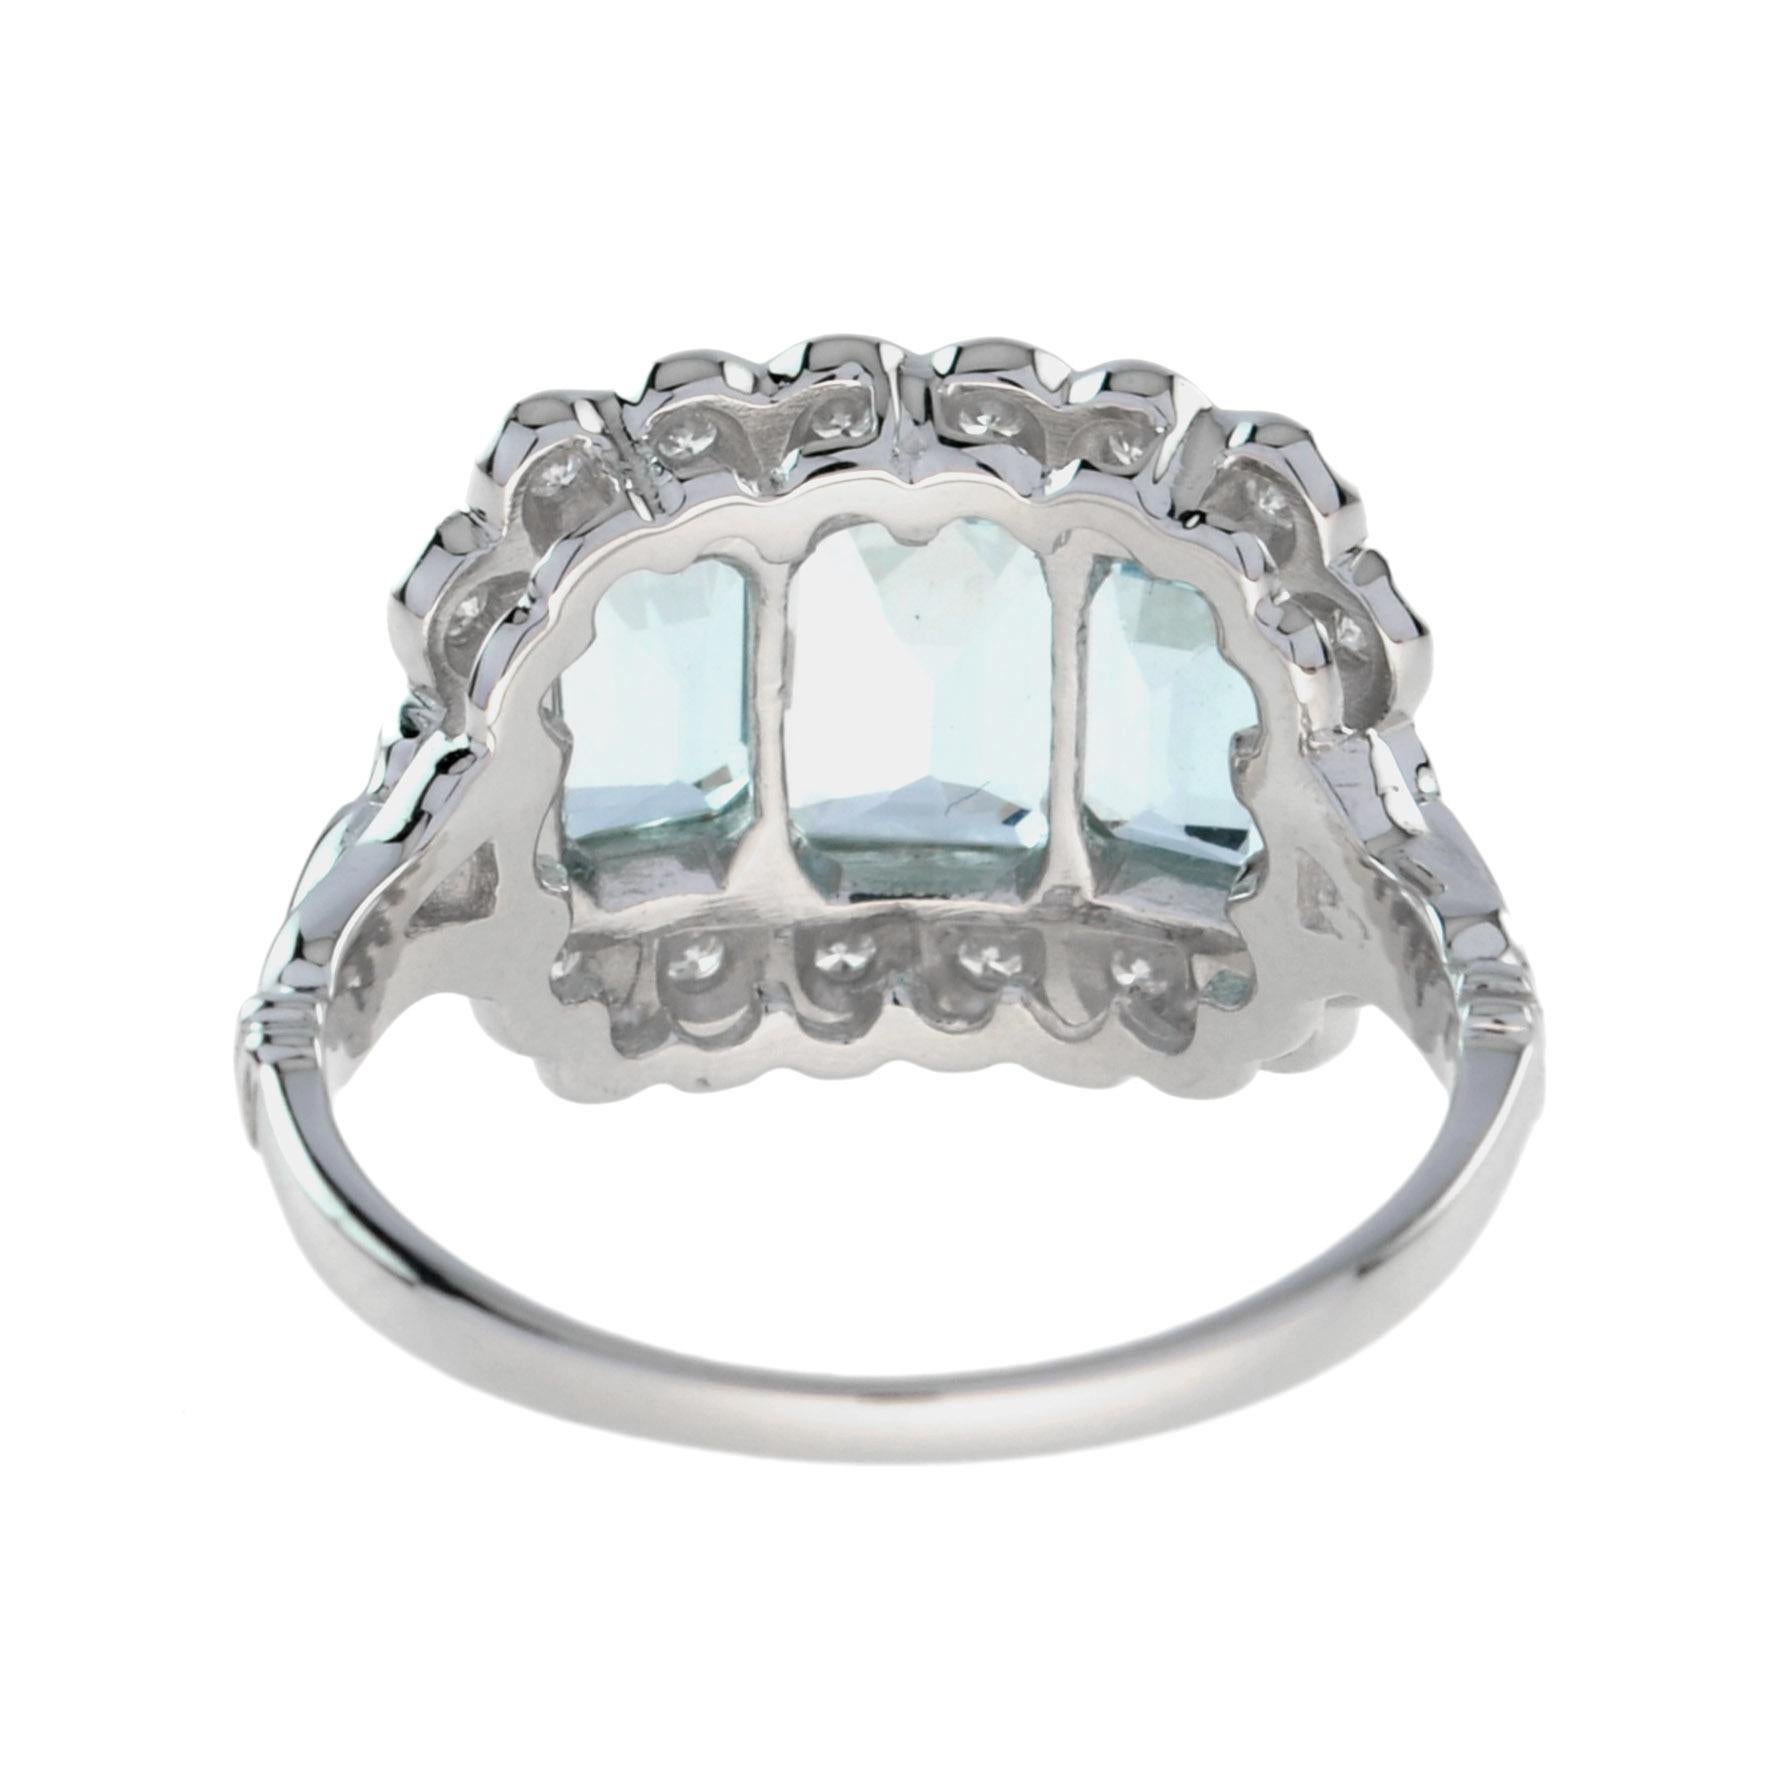 For Sale:  Emerald Cut Aquamarine and Diamond Three Stone Ring in Platinum950 4